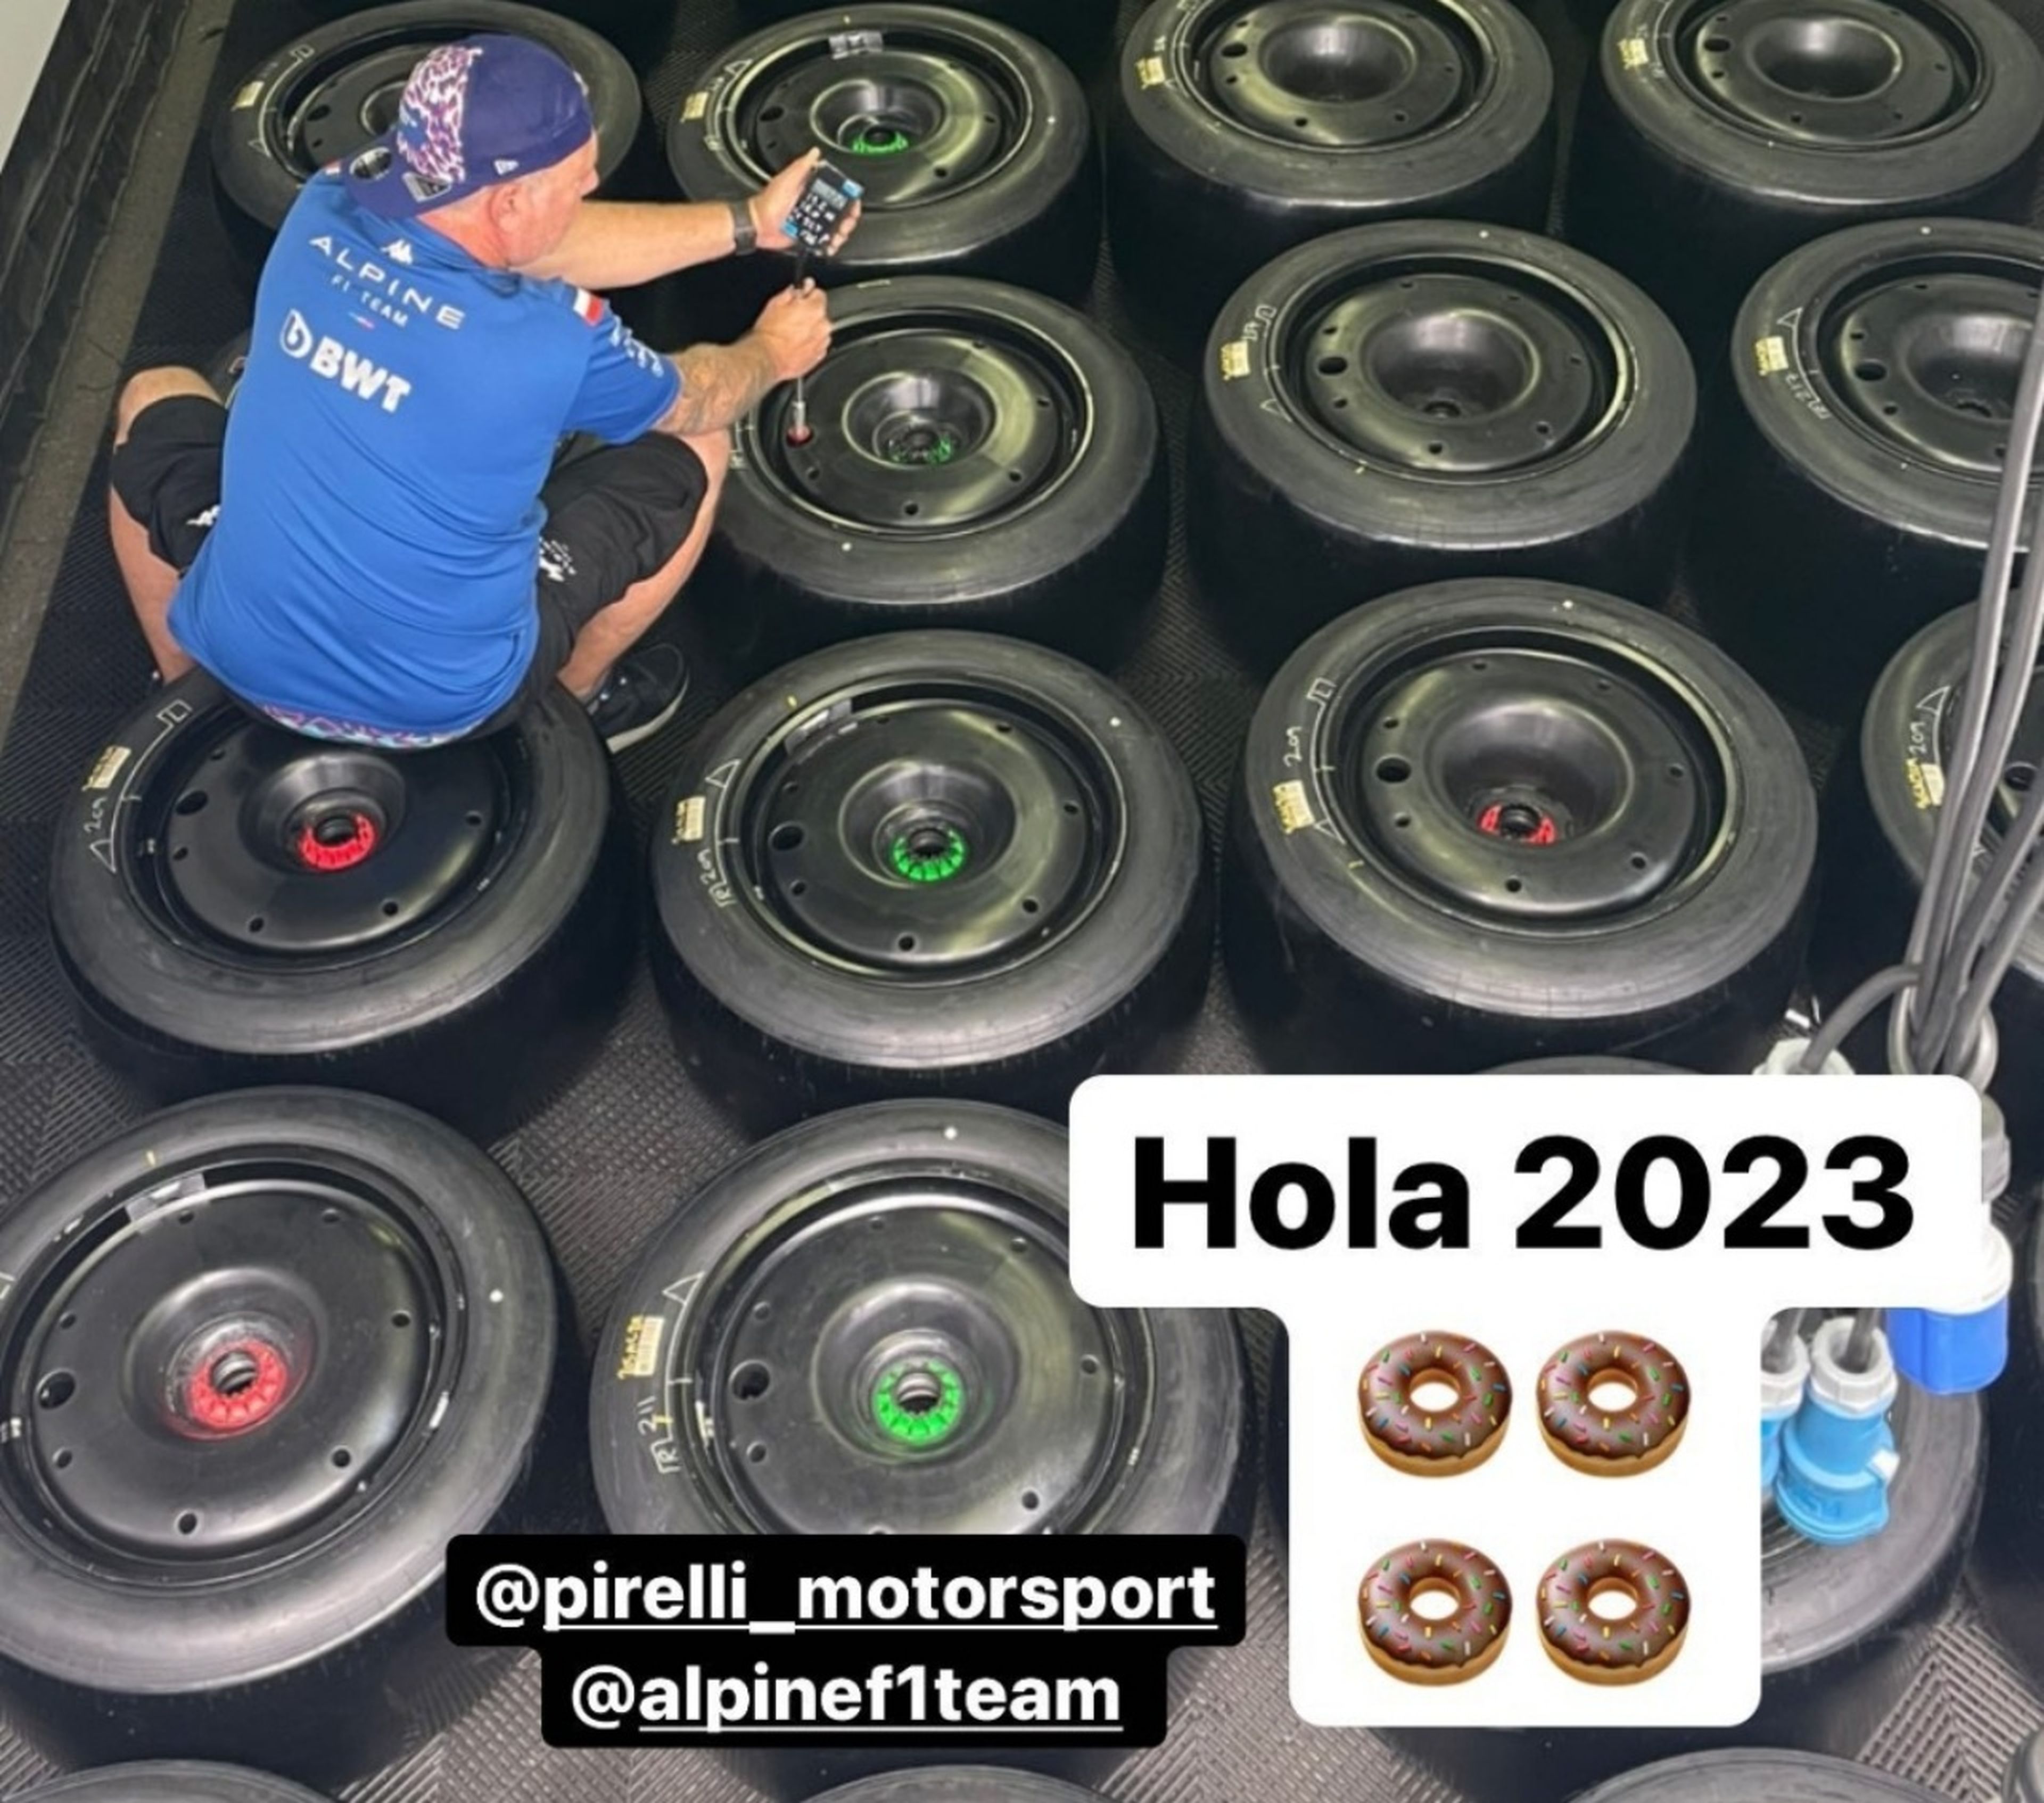 La 'story' de Alonso en Instagram